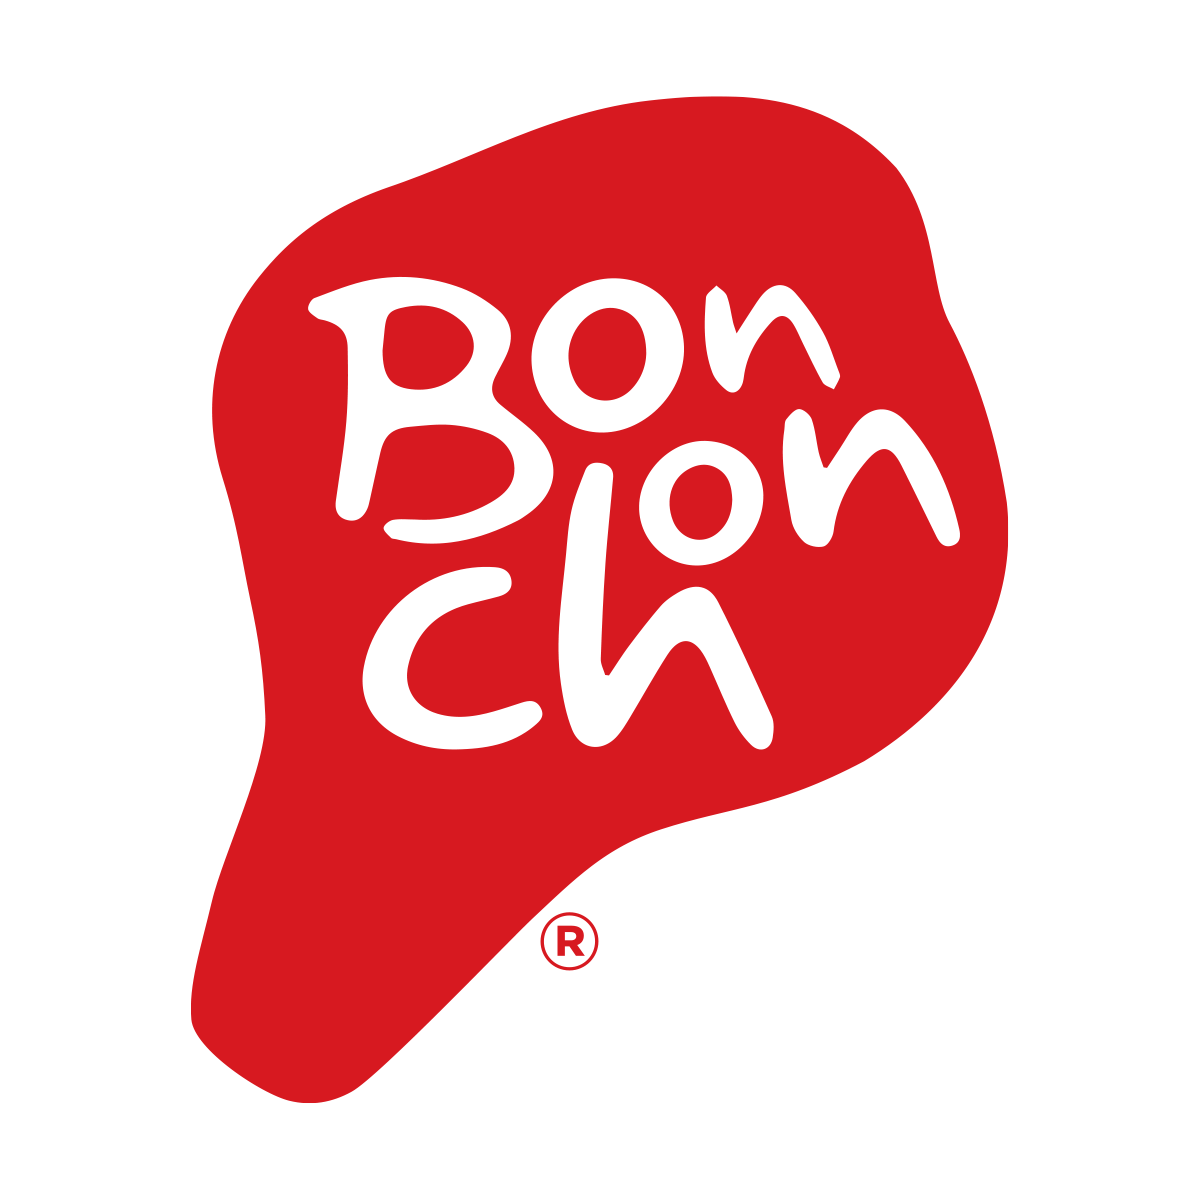 Bonchon Uptown